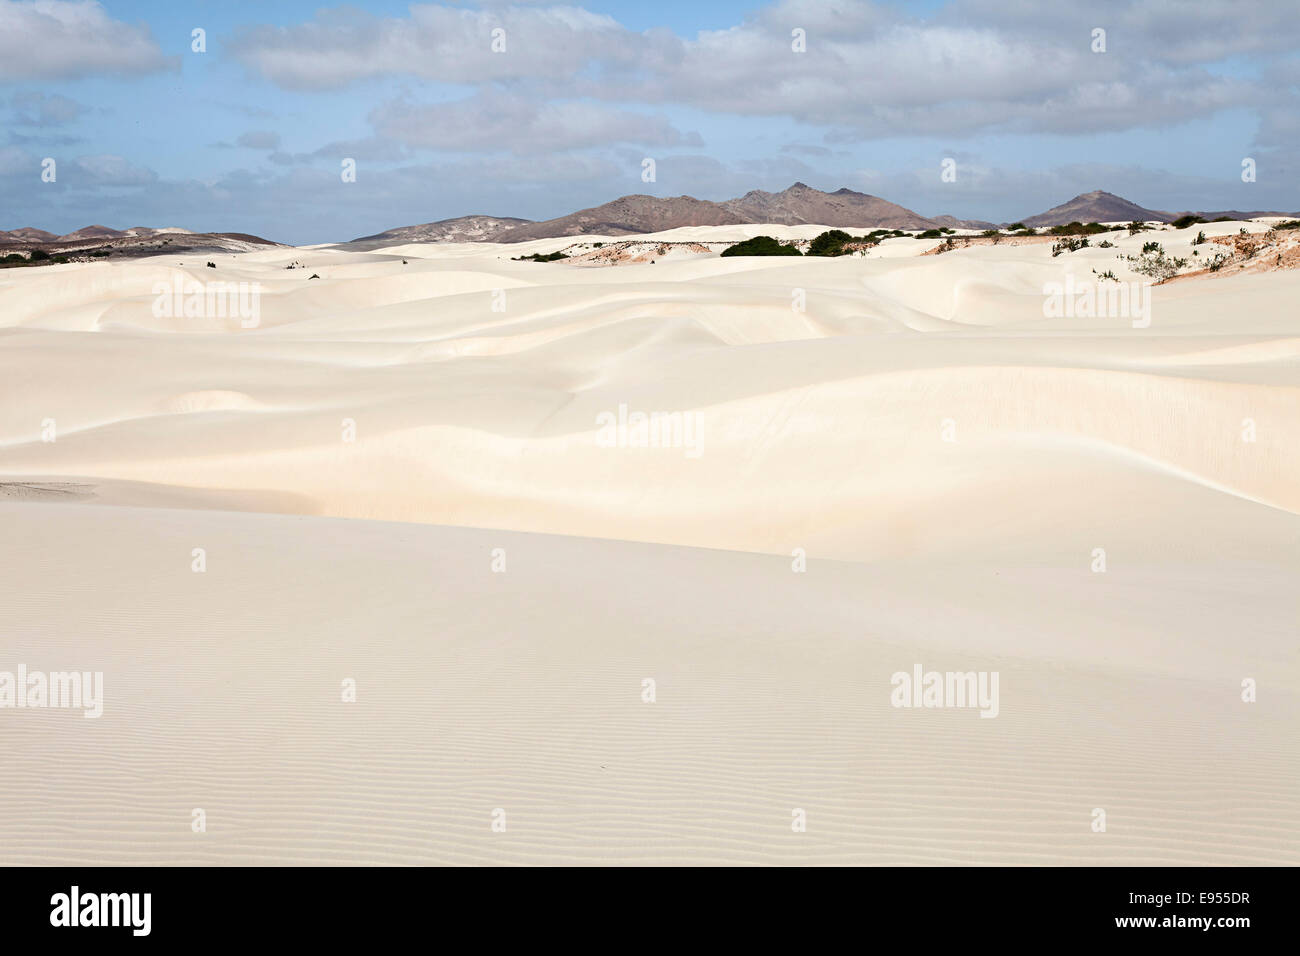 Sand dunes in the small desert Deserto Viana, island of Boa Vista, Cape Verde, Republic of Cabo Verde Stock Photo